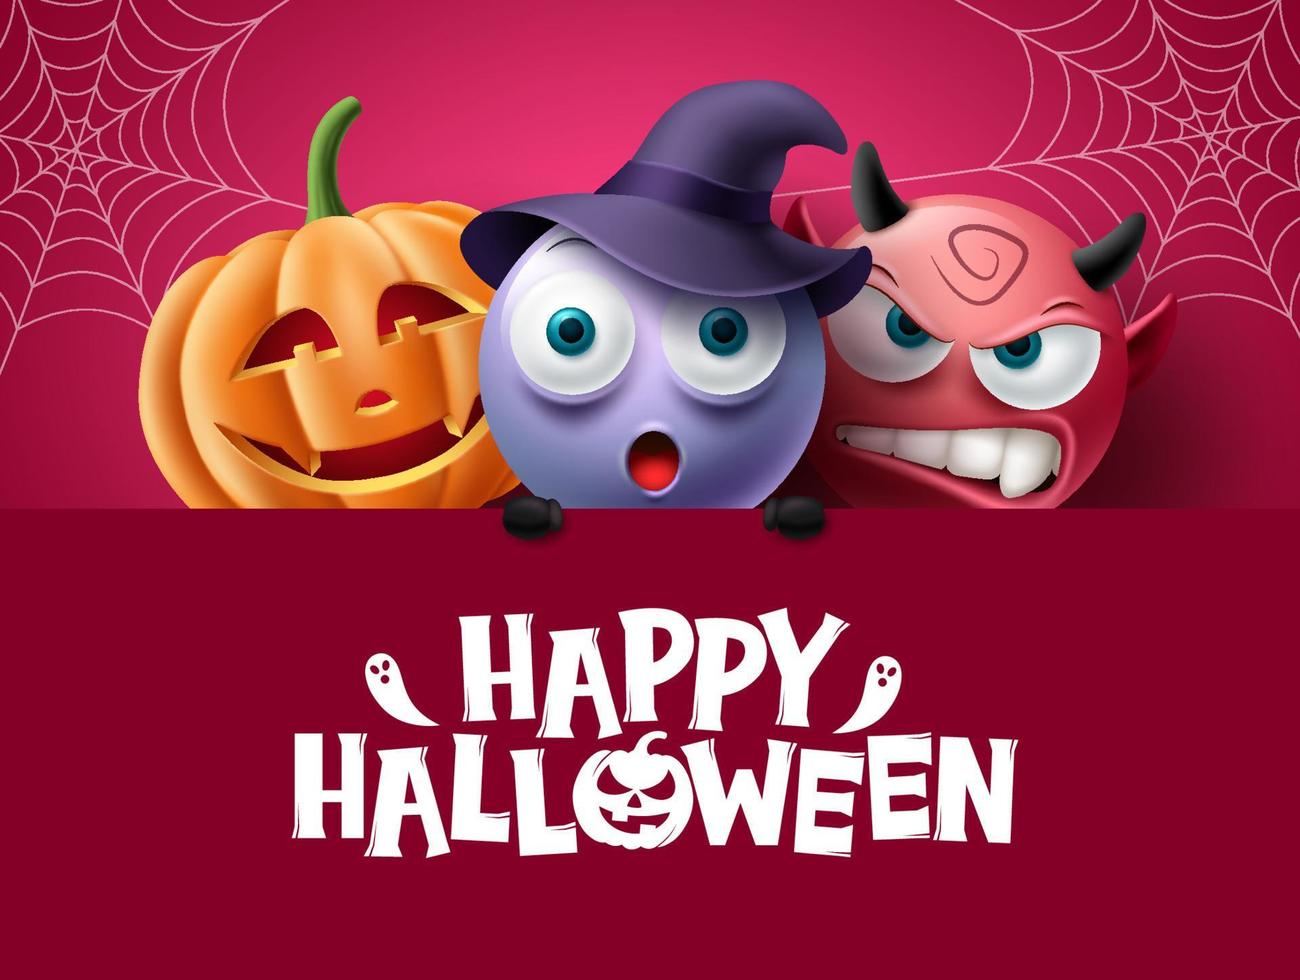 disegno di sfondo dei personaggi di halloween. testo di halloween felice nello spazio rosso con personaggi inquietanti, spettrali e spaventosi per la decorazione di feste horror. illustrazione vettoriale. vettore